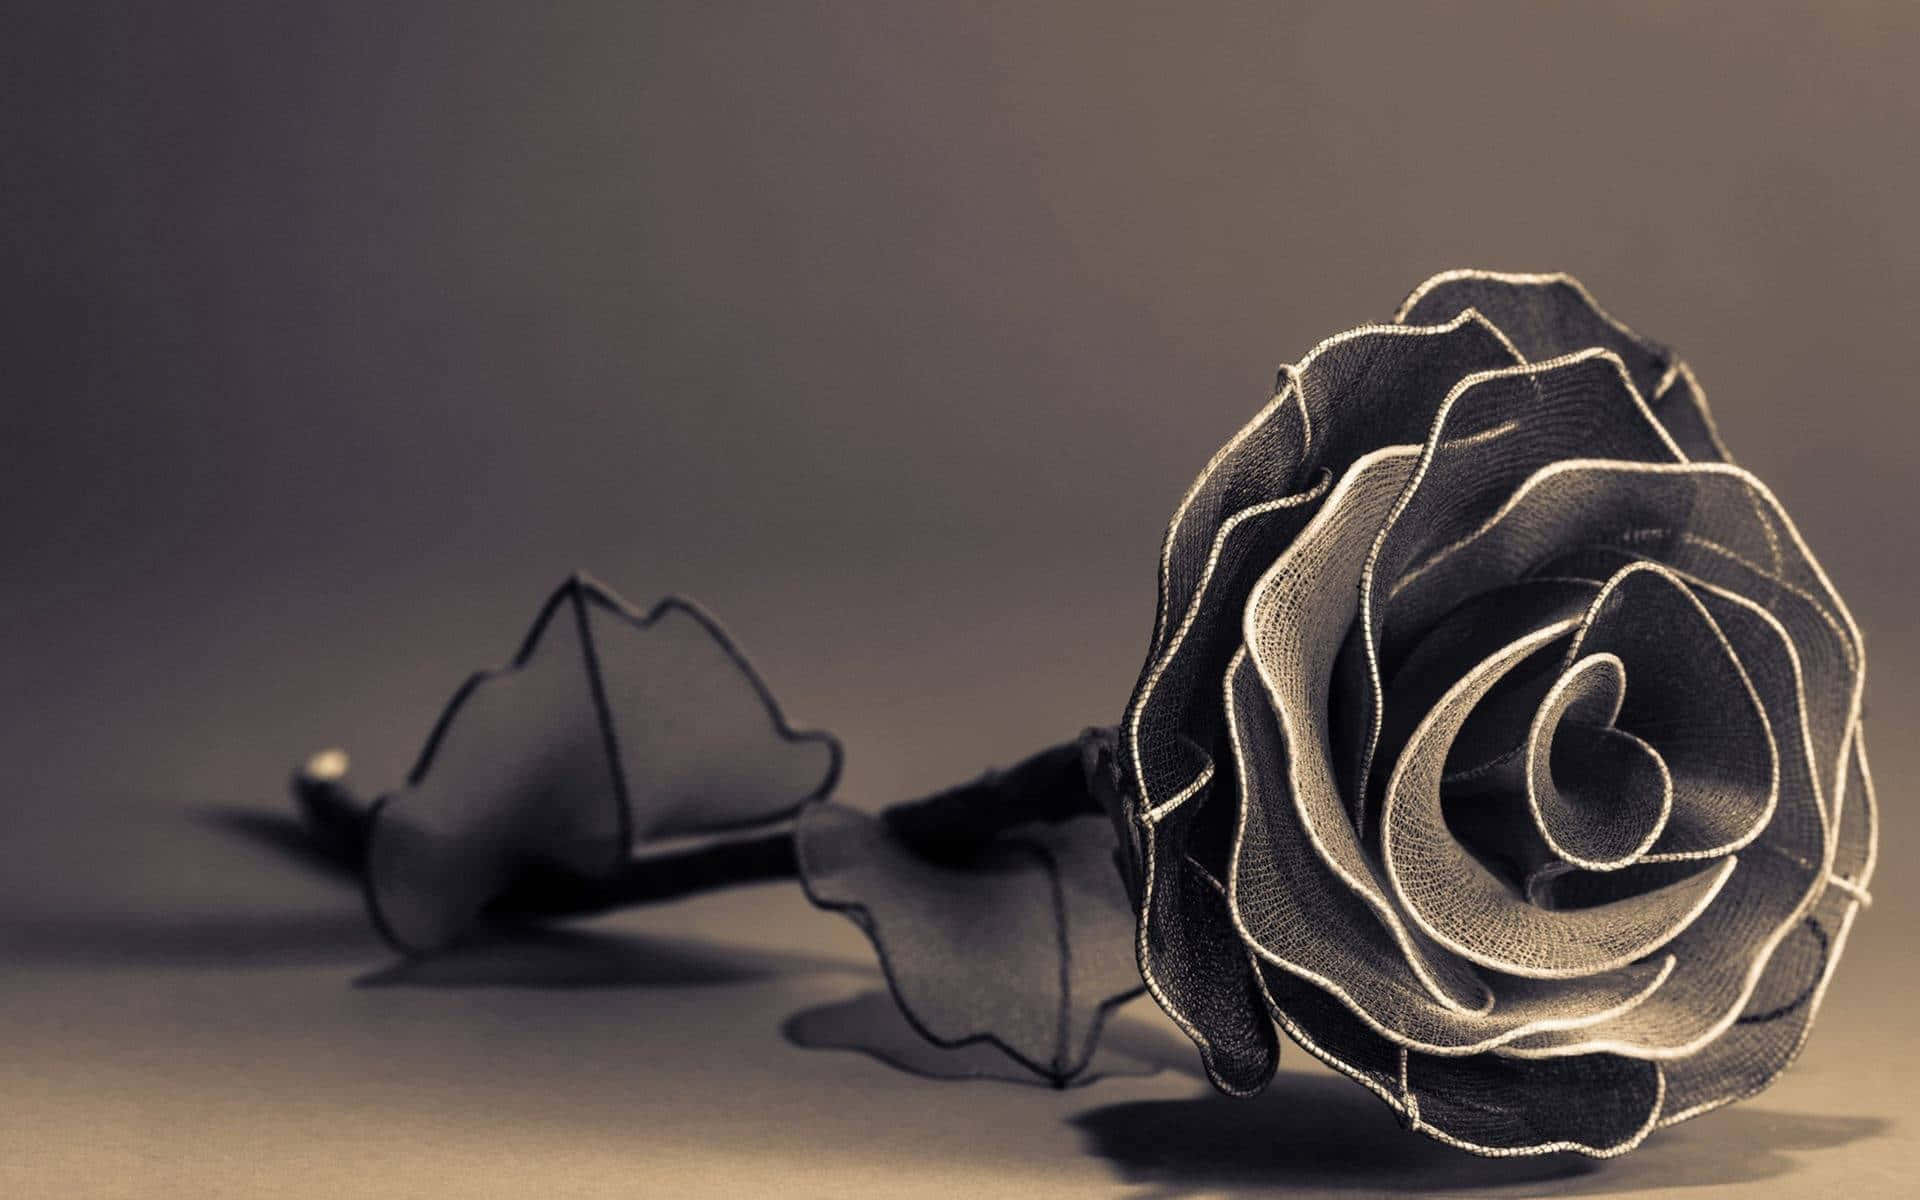 Aesthetic Rose in Full Bloom